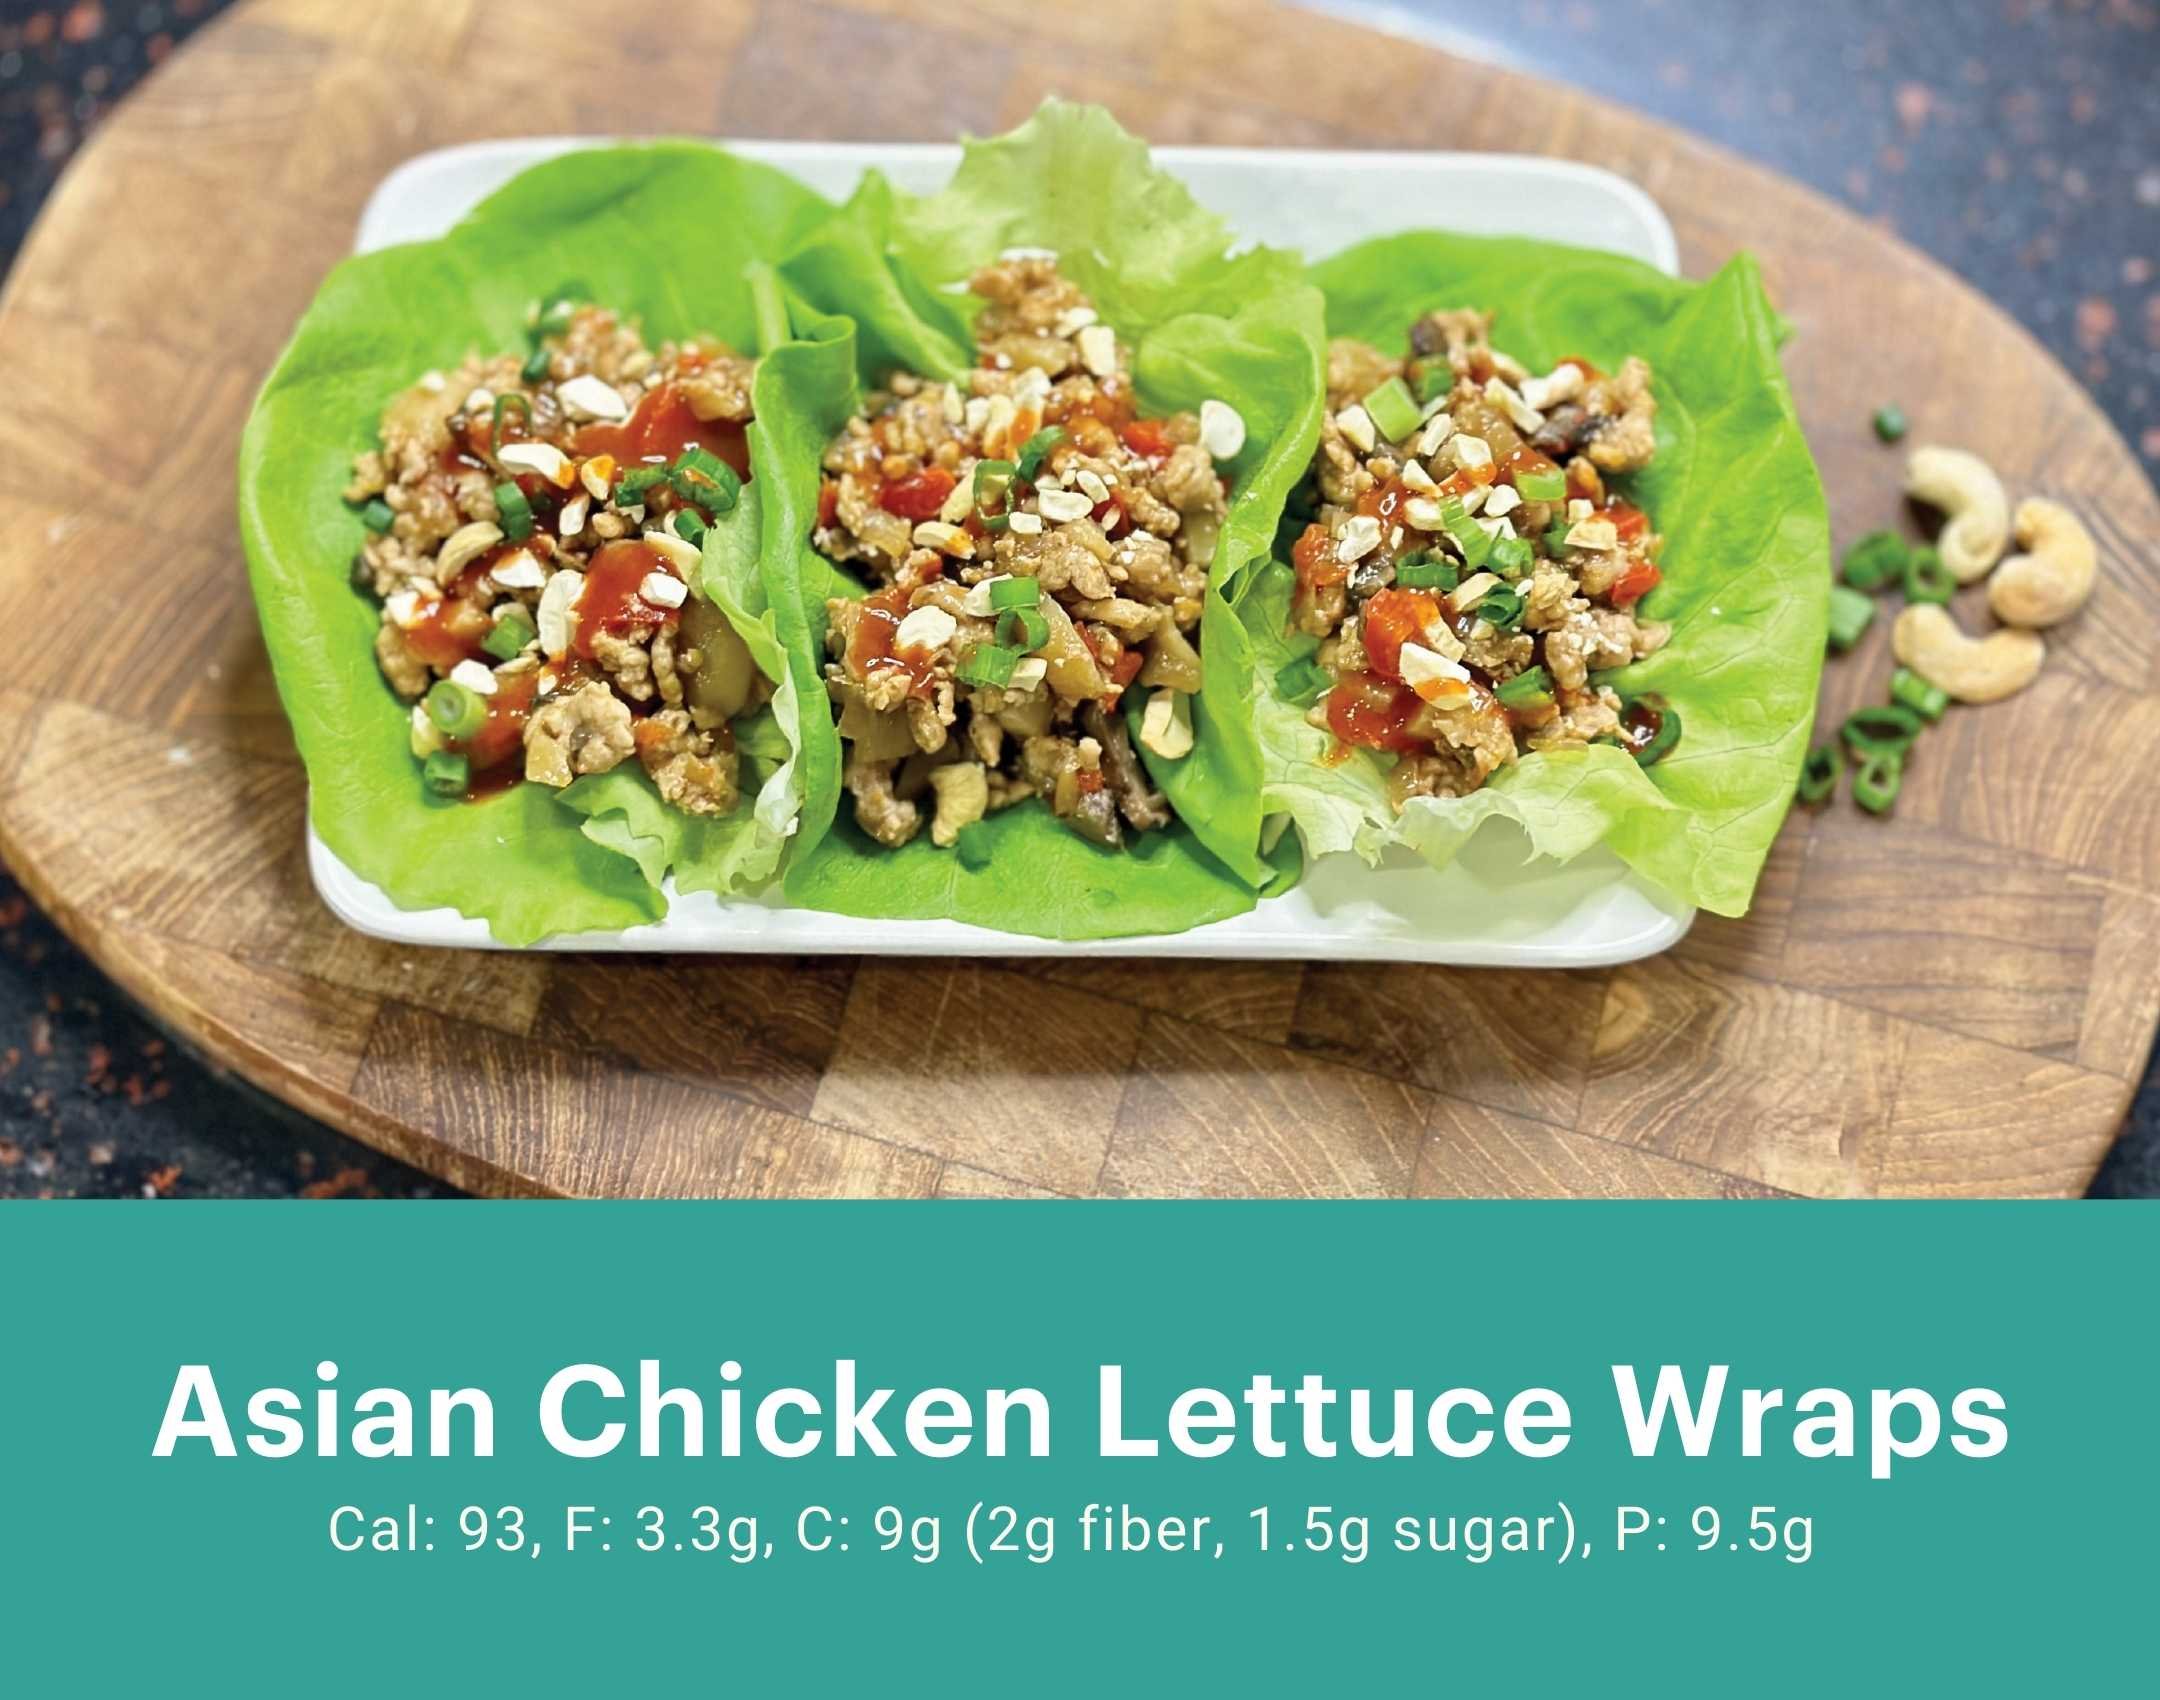 Asian Chicken Lettuce Wraps.jpg